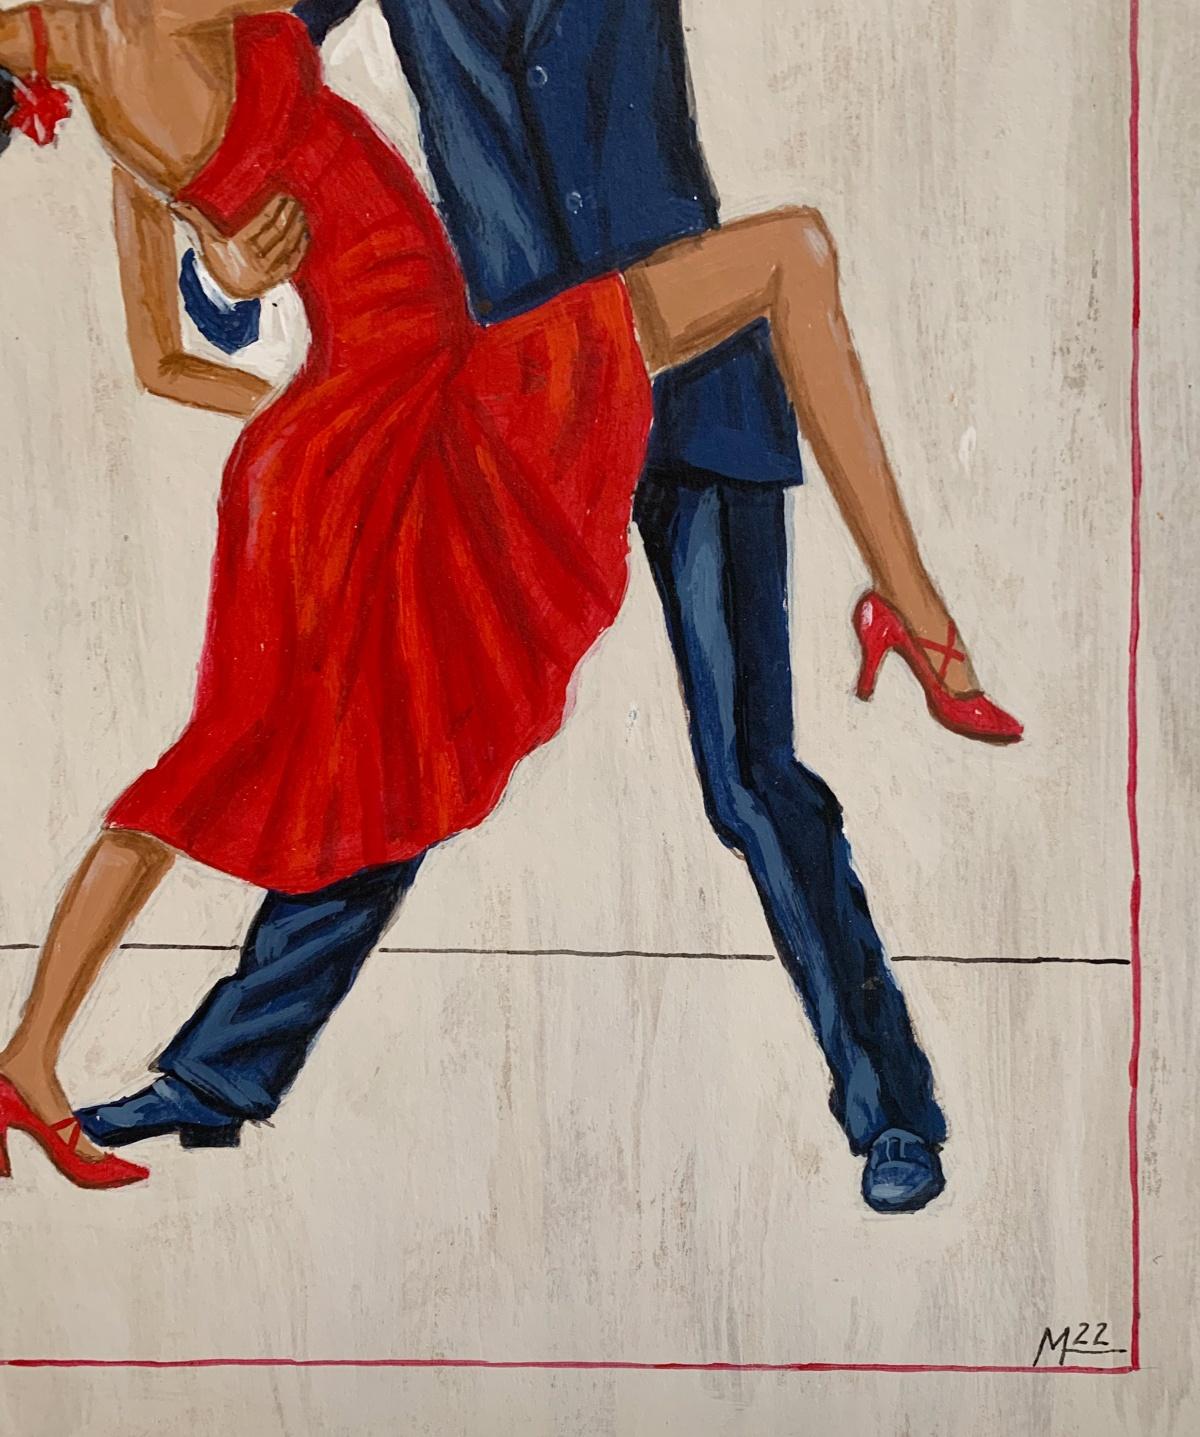 paintings of tango dancers